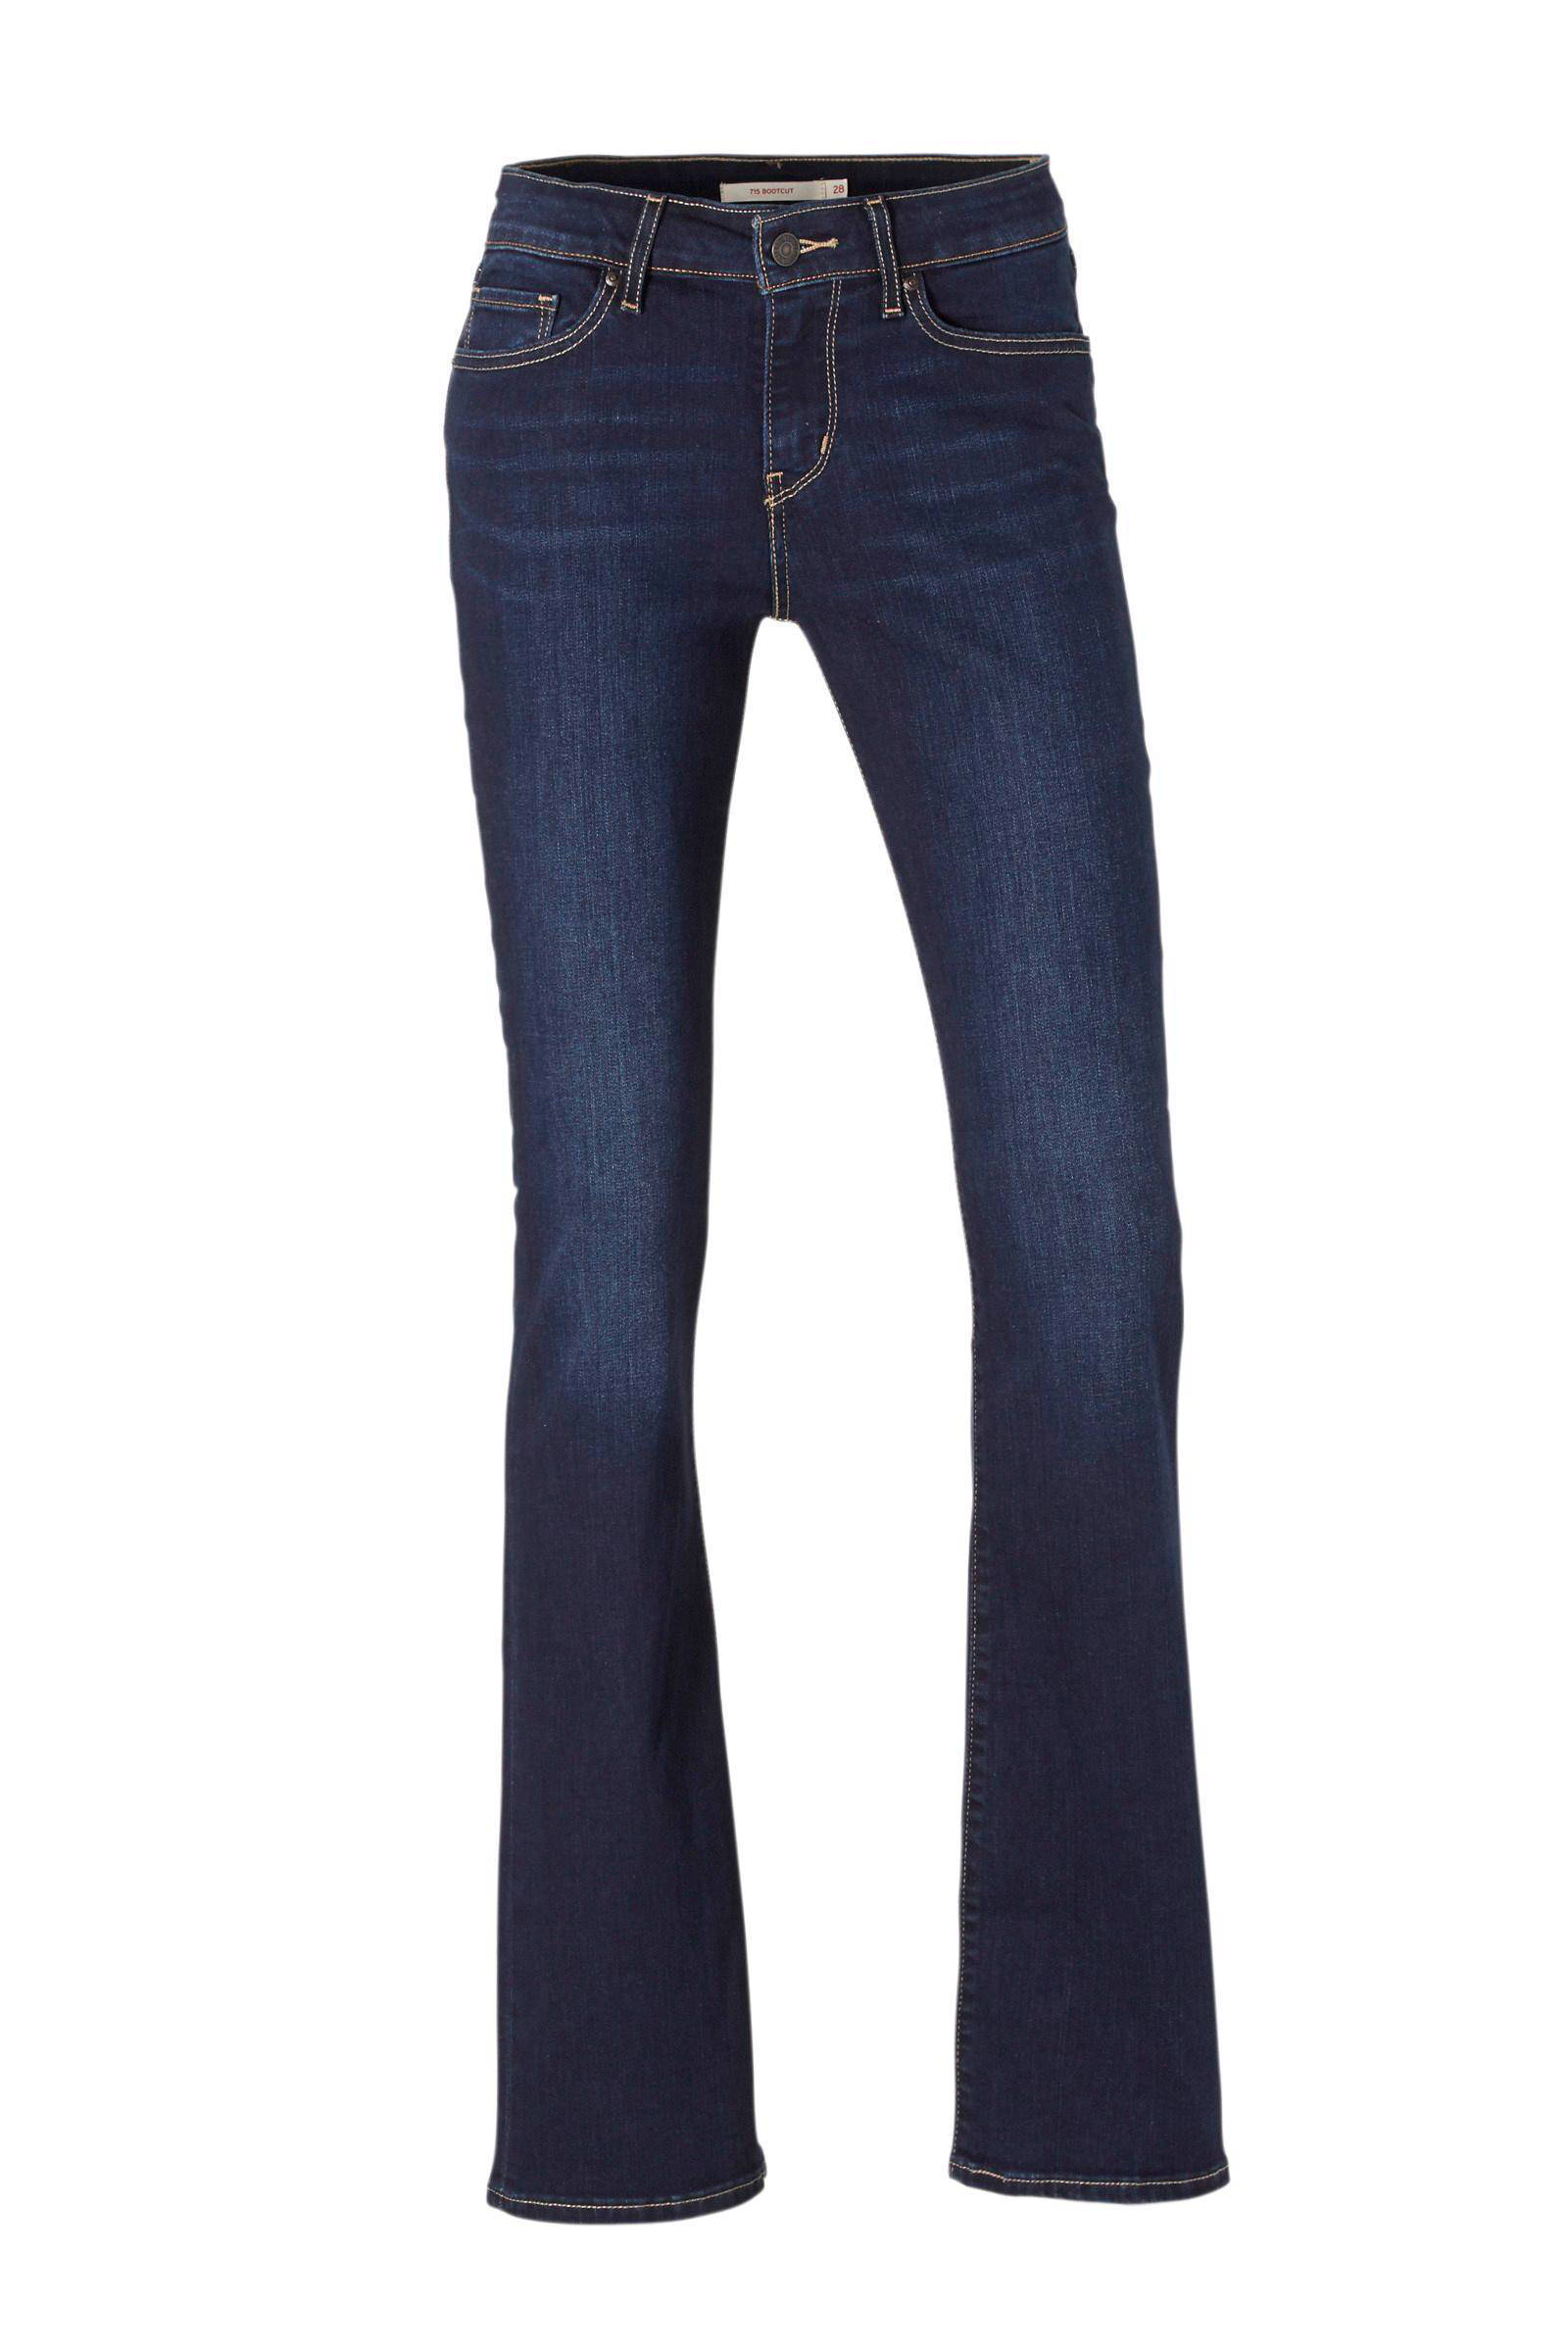 jeans levis 715 bootcut